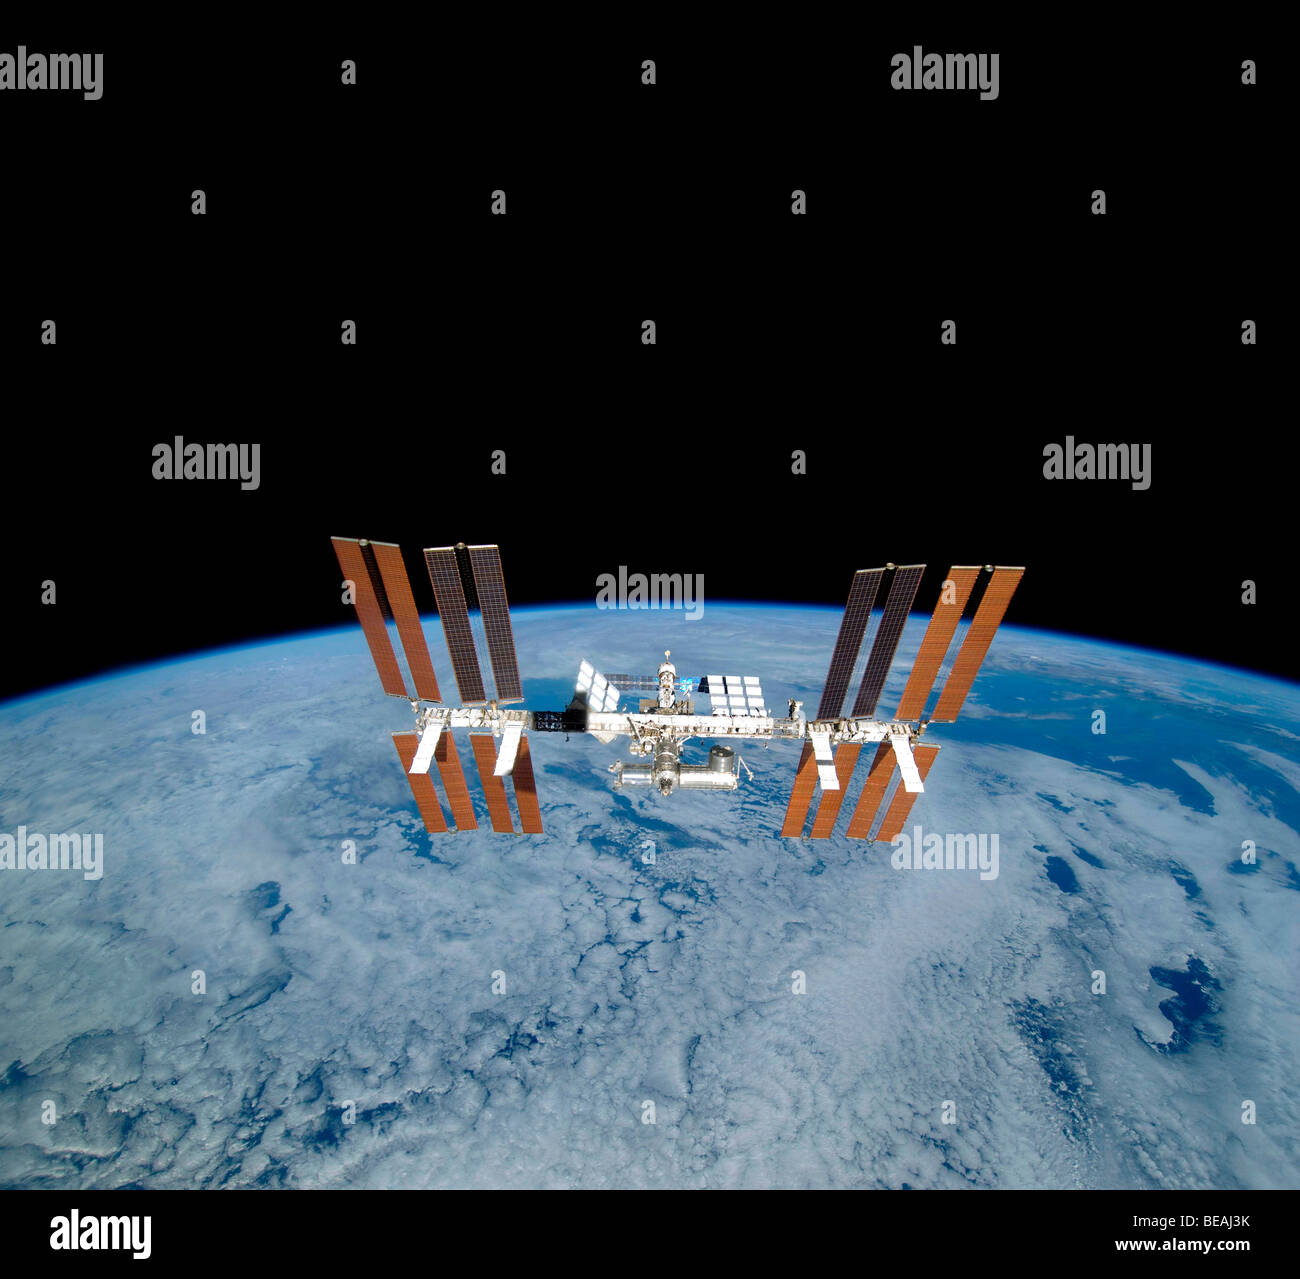 Station spatiale internationale. Version optimisée et améliorée d'un original de l'image de la NASA. Mars 2009. Crédit NASA Banque D'Images